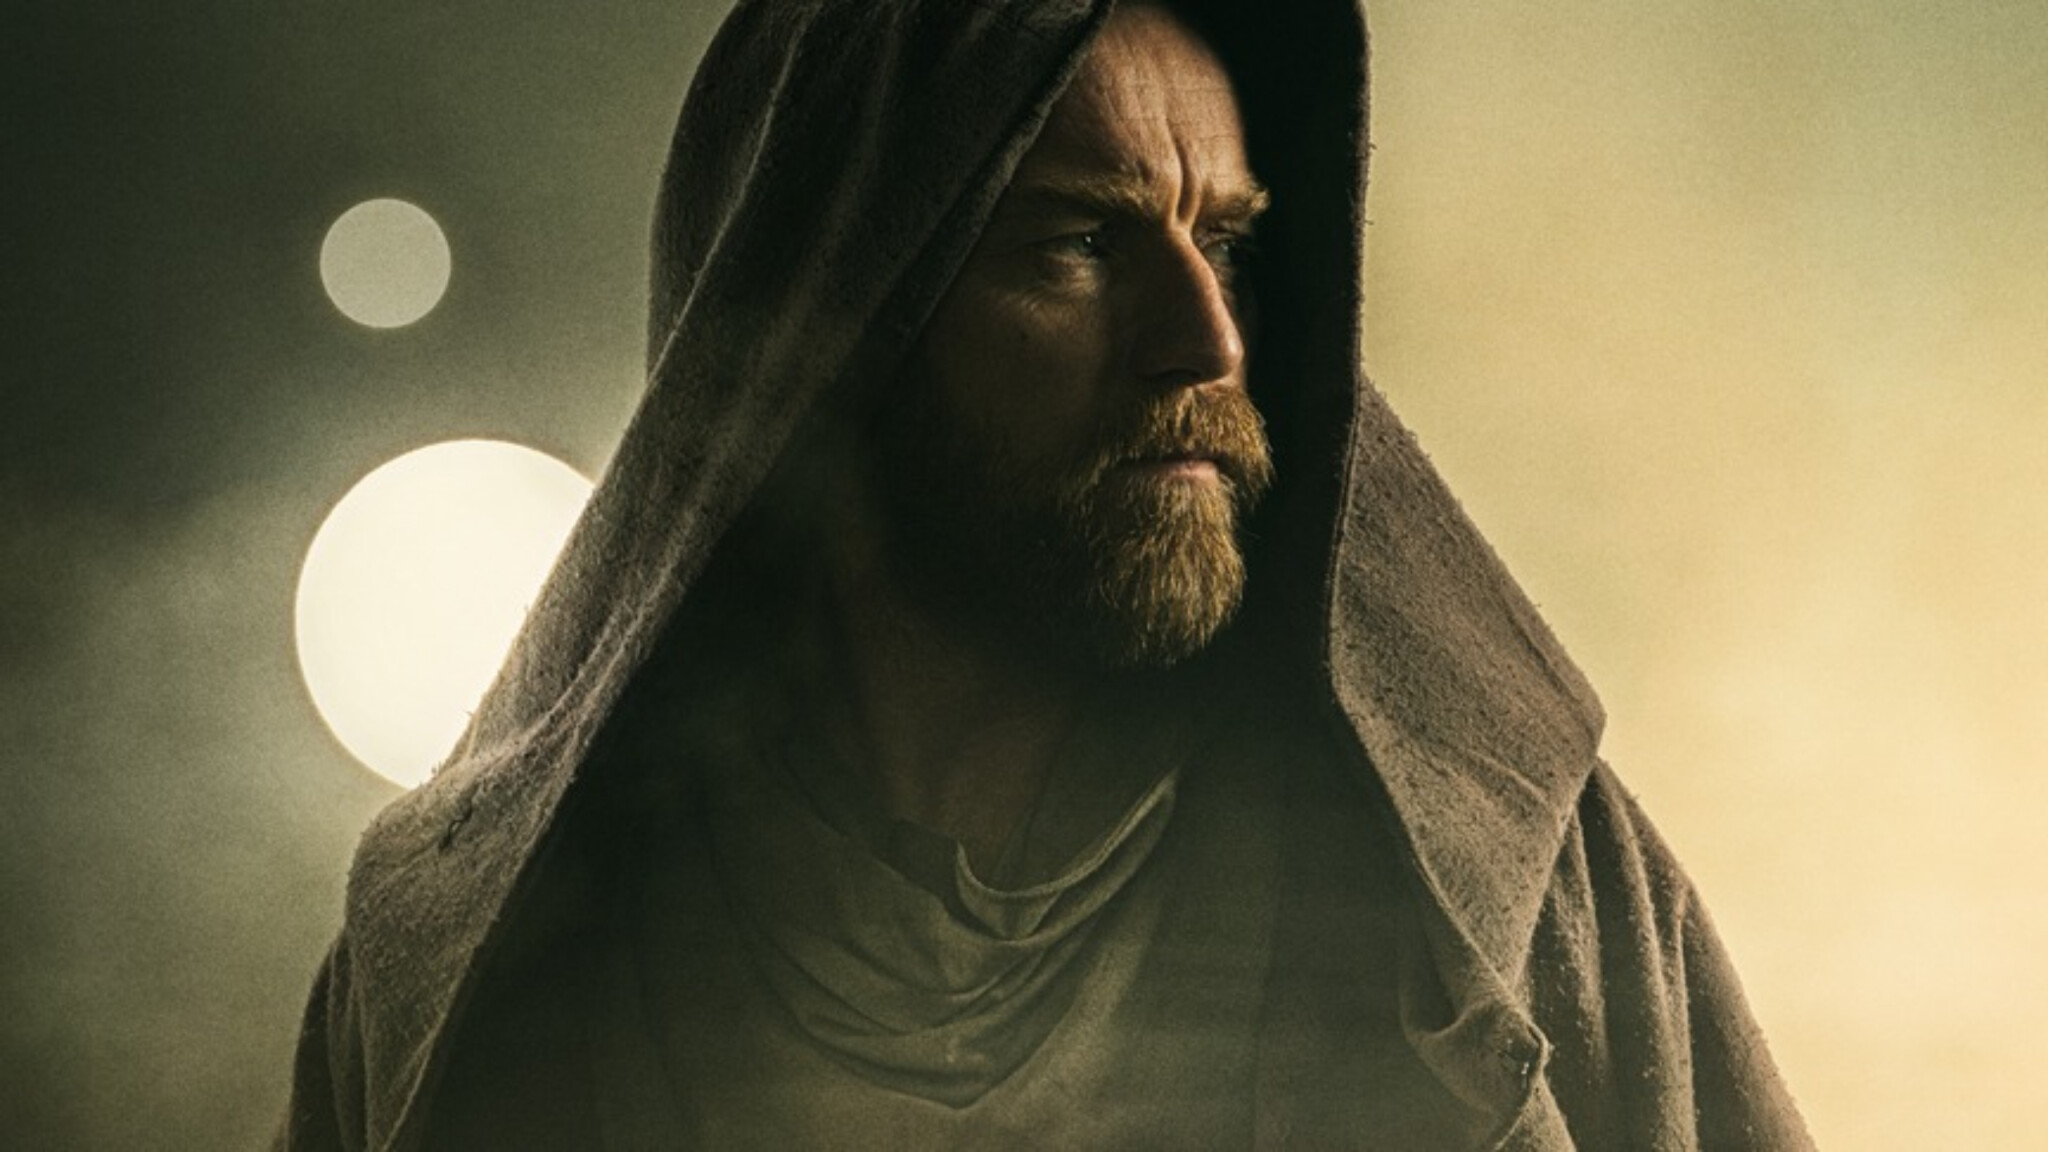 Star Wars ožily návratem Obi-Wana. Chystají se seriály pro děti, dorazí i Jude Law